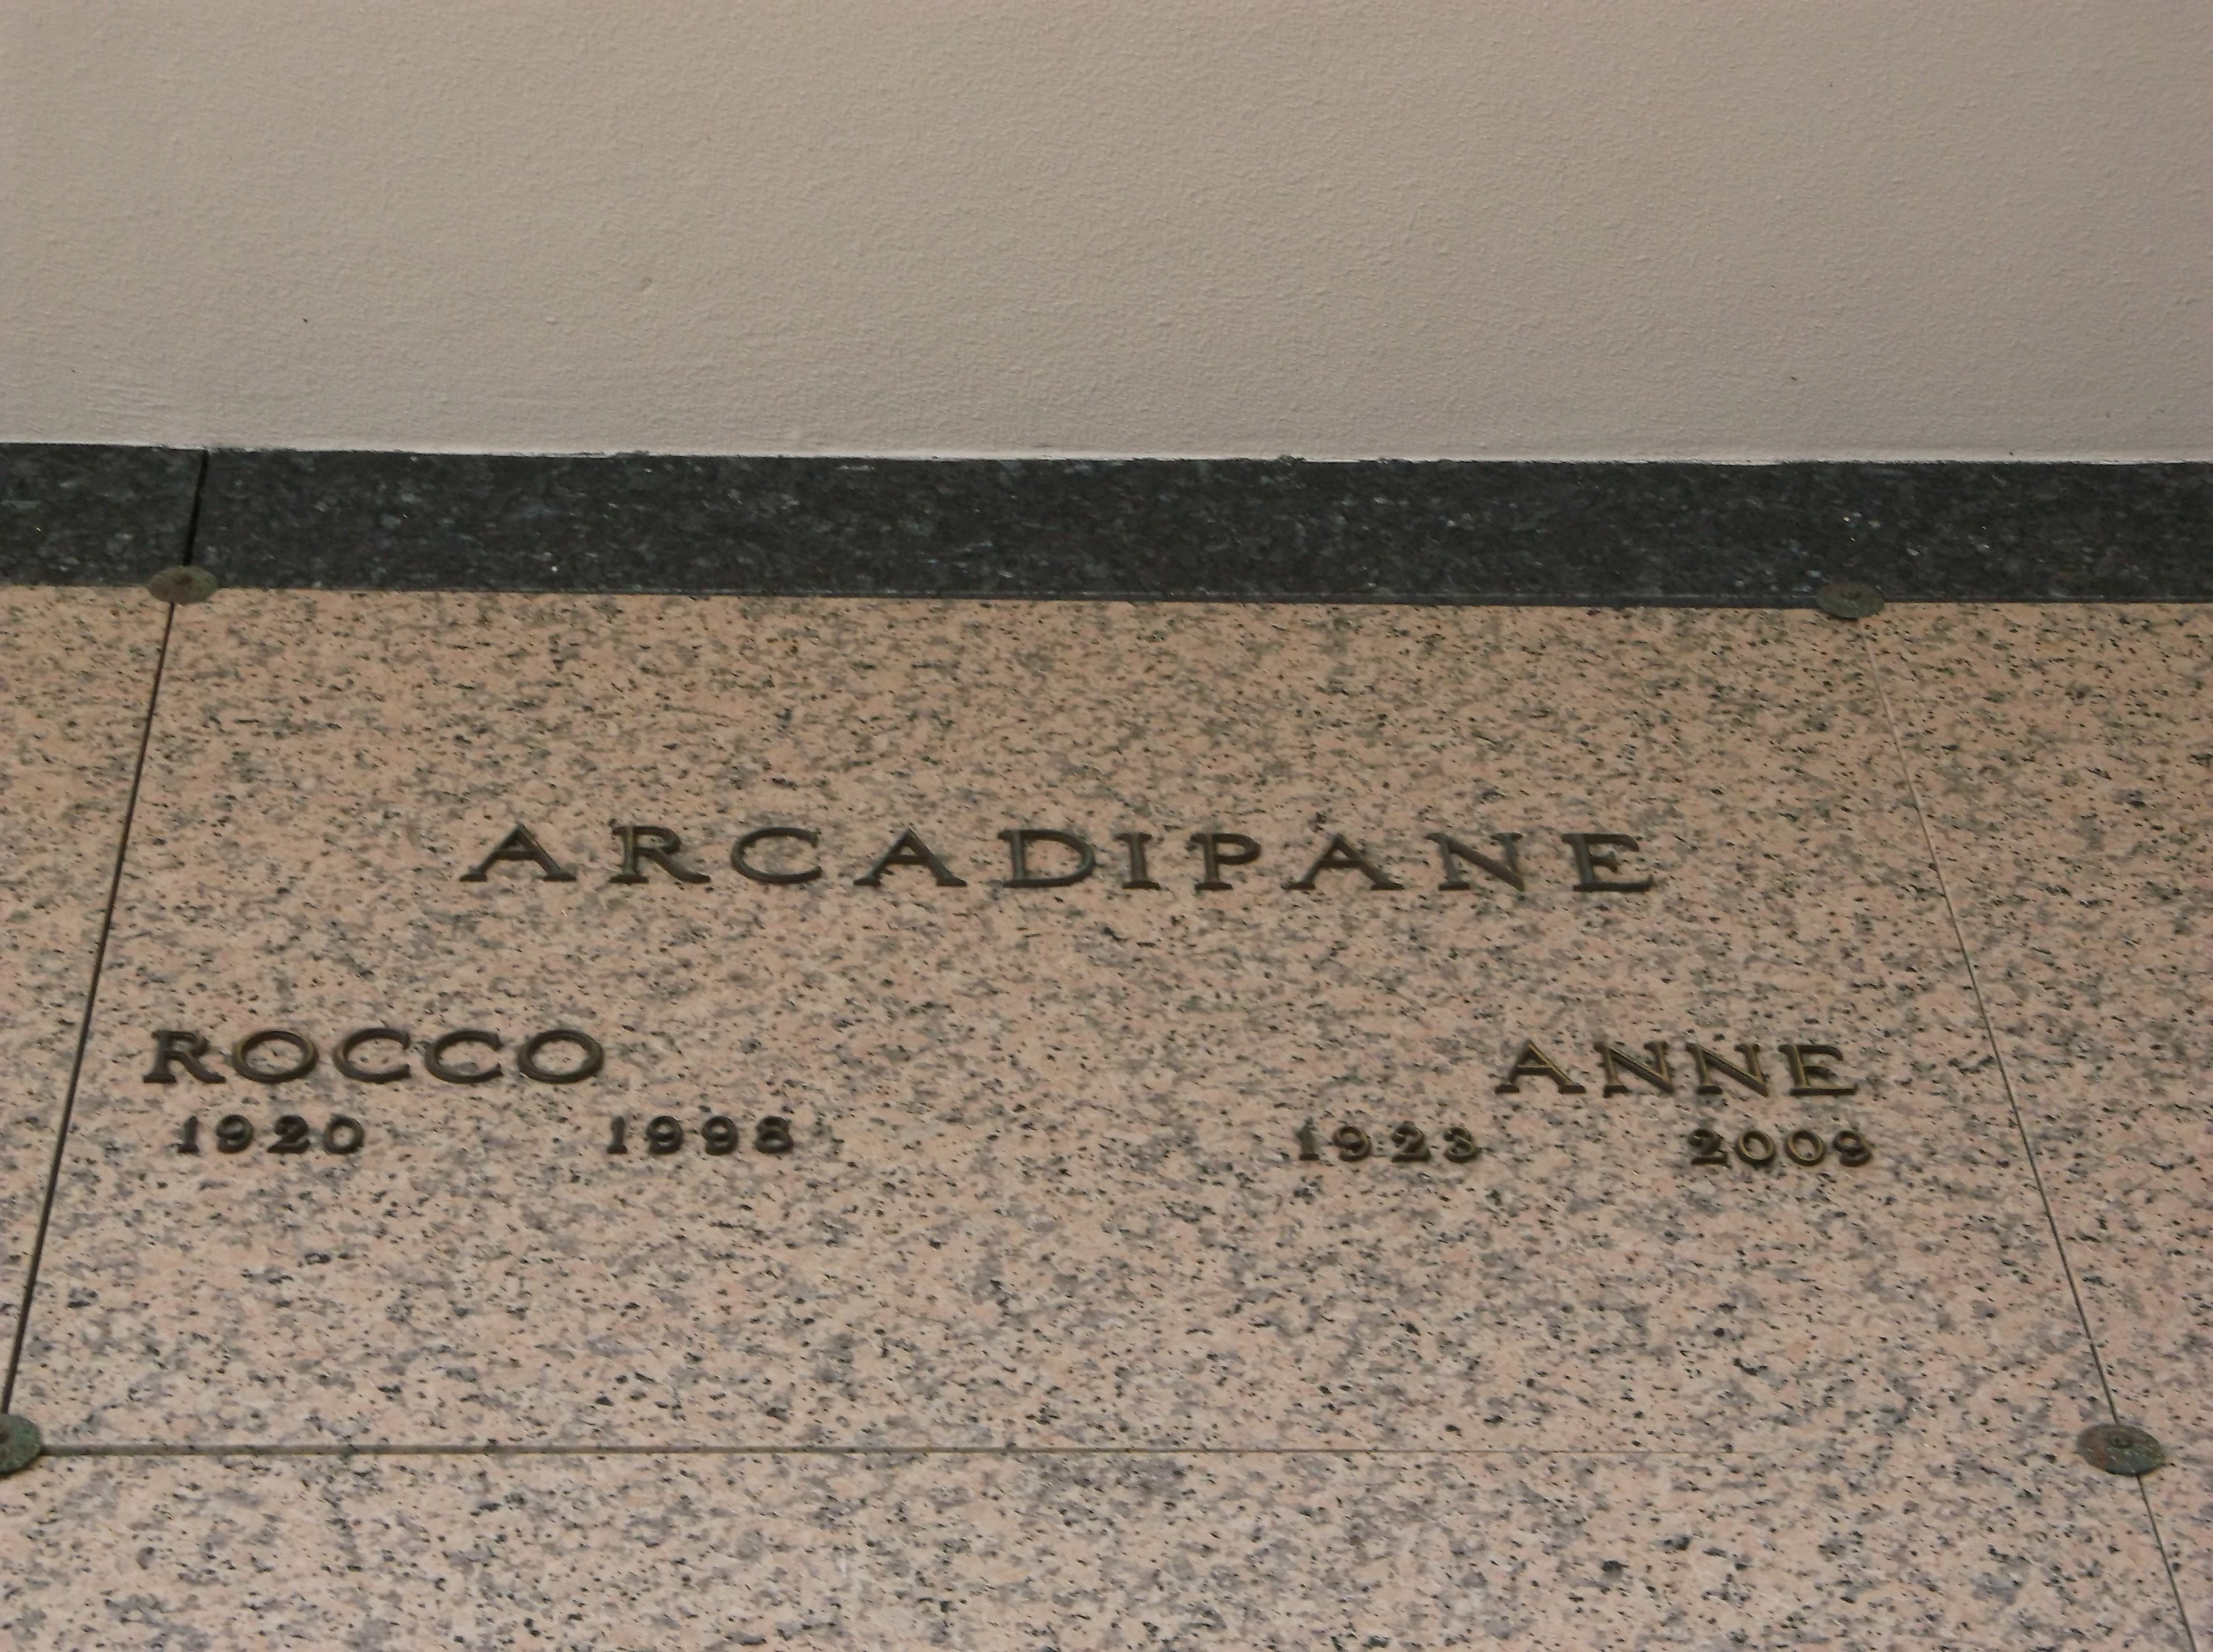 Anne Arcadipane